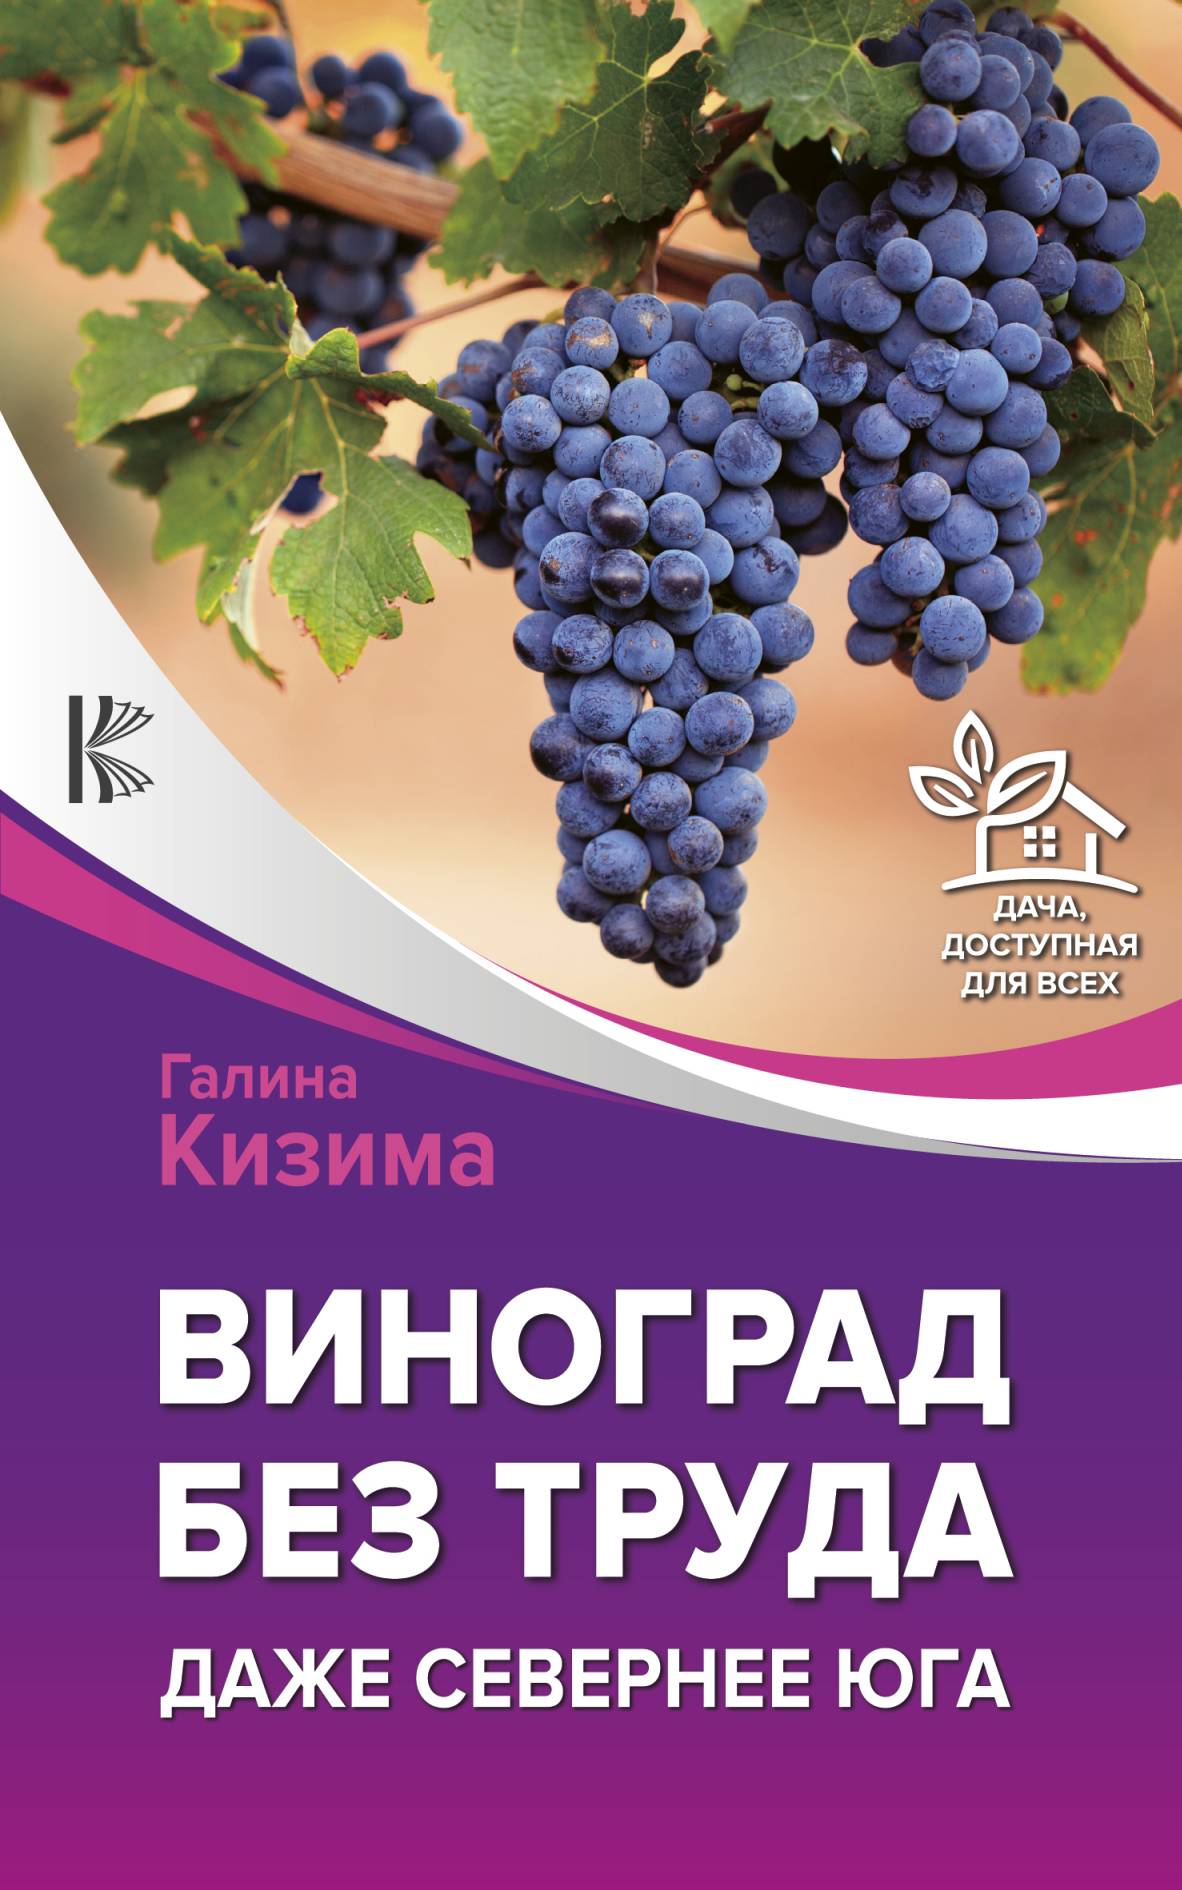 Виноград – это просто! Российские виноградники от юга до севера